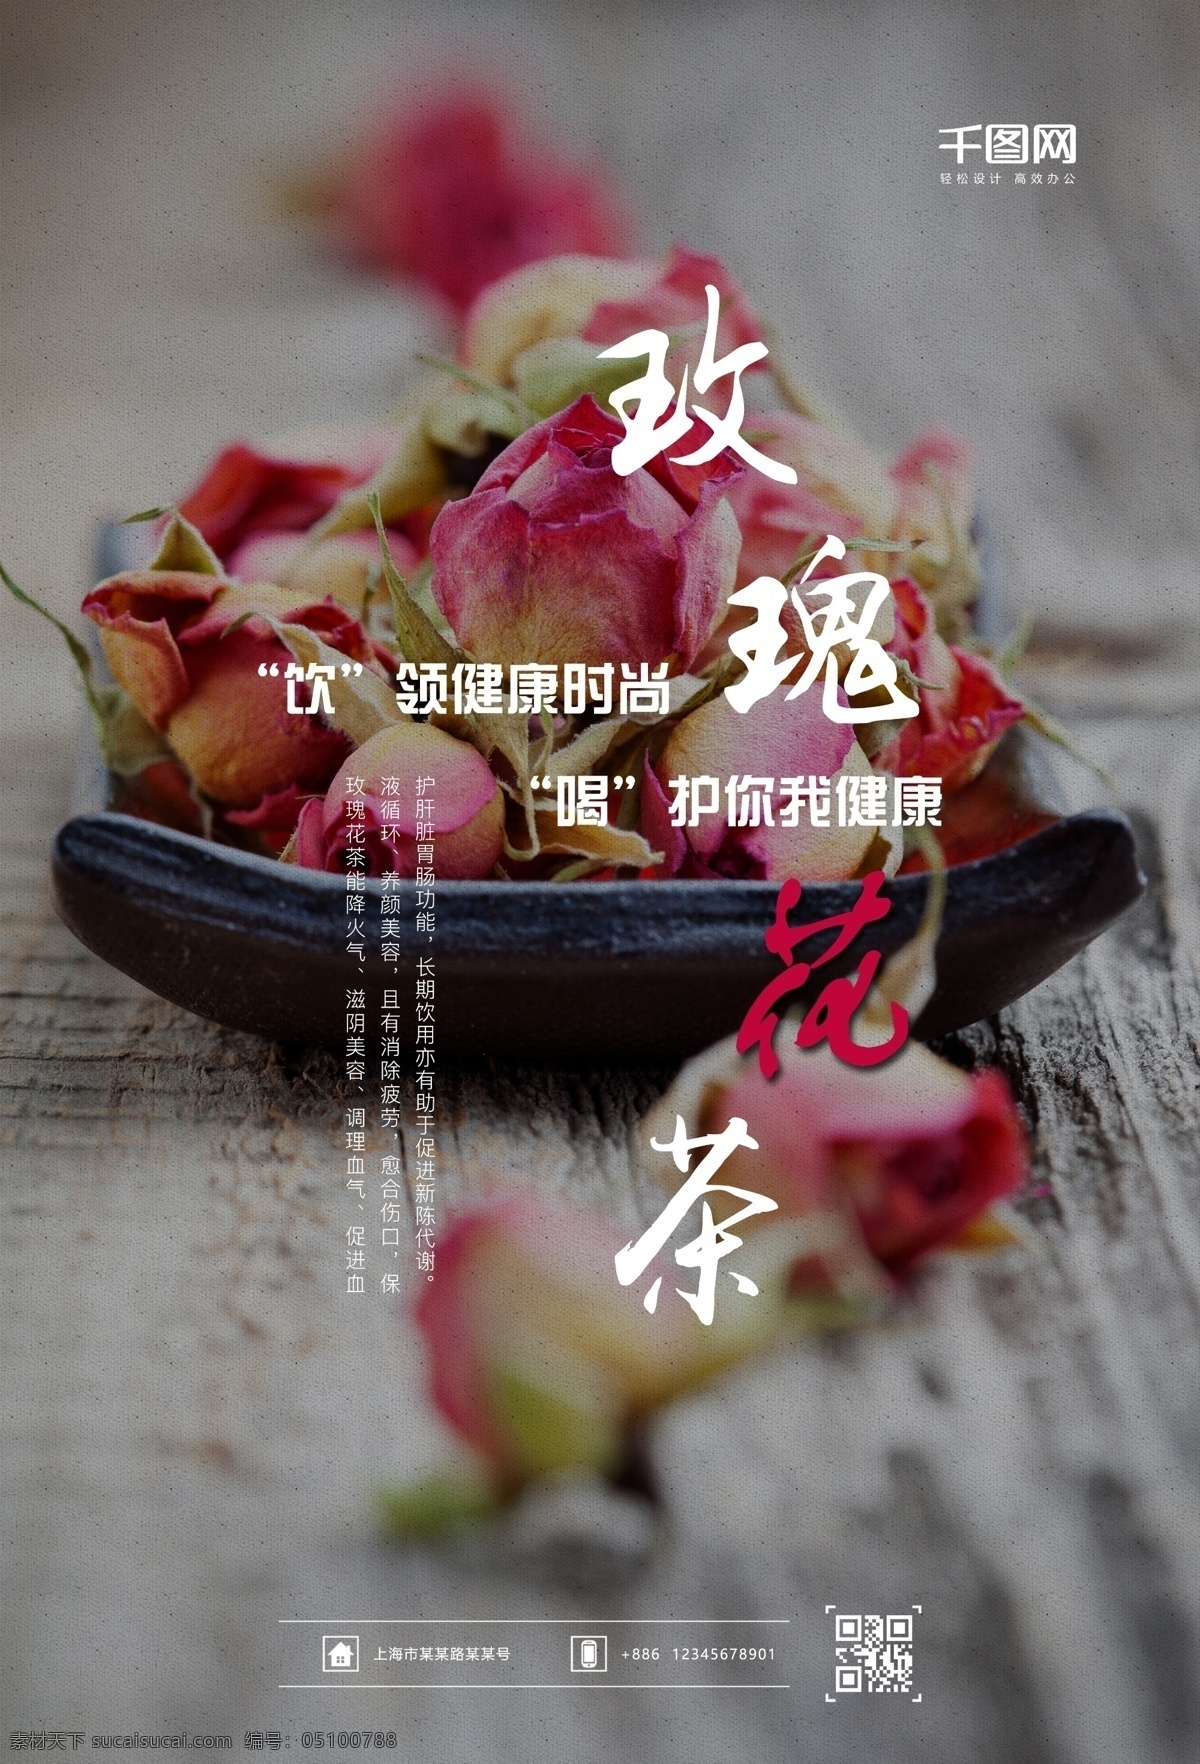 玫瑰花茶 中国 再 加工 茶 类 花茶 红茶 绿茶 鲜花 瑰外 蔷薇 桂花 现代月季 养生 养颜美容 海报